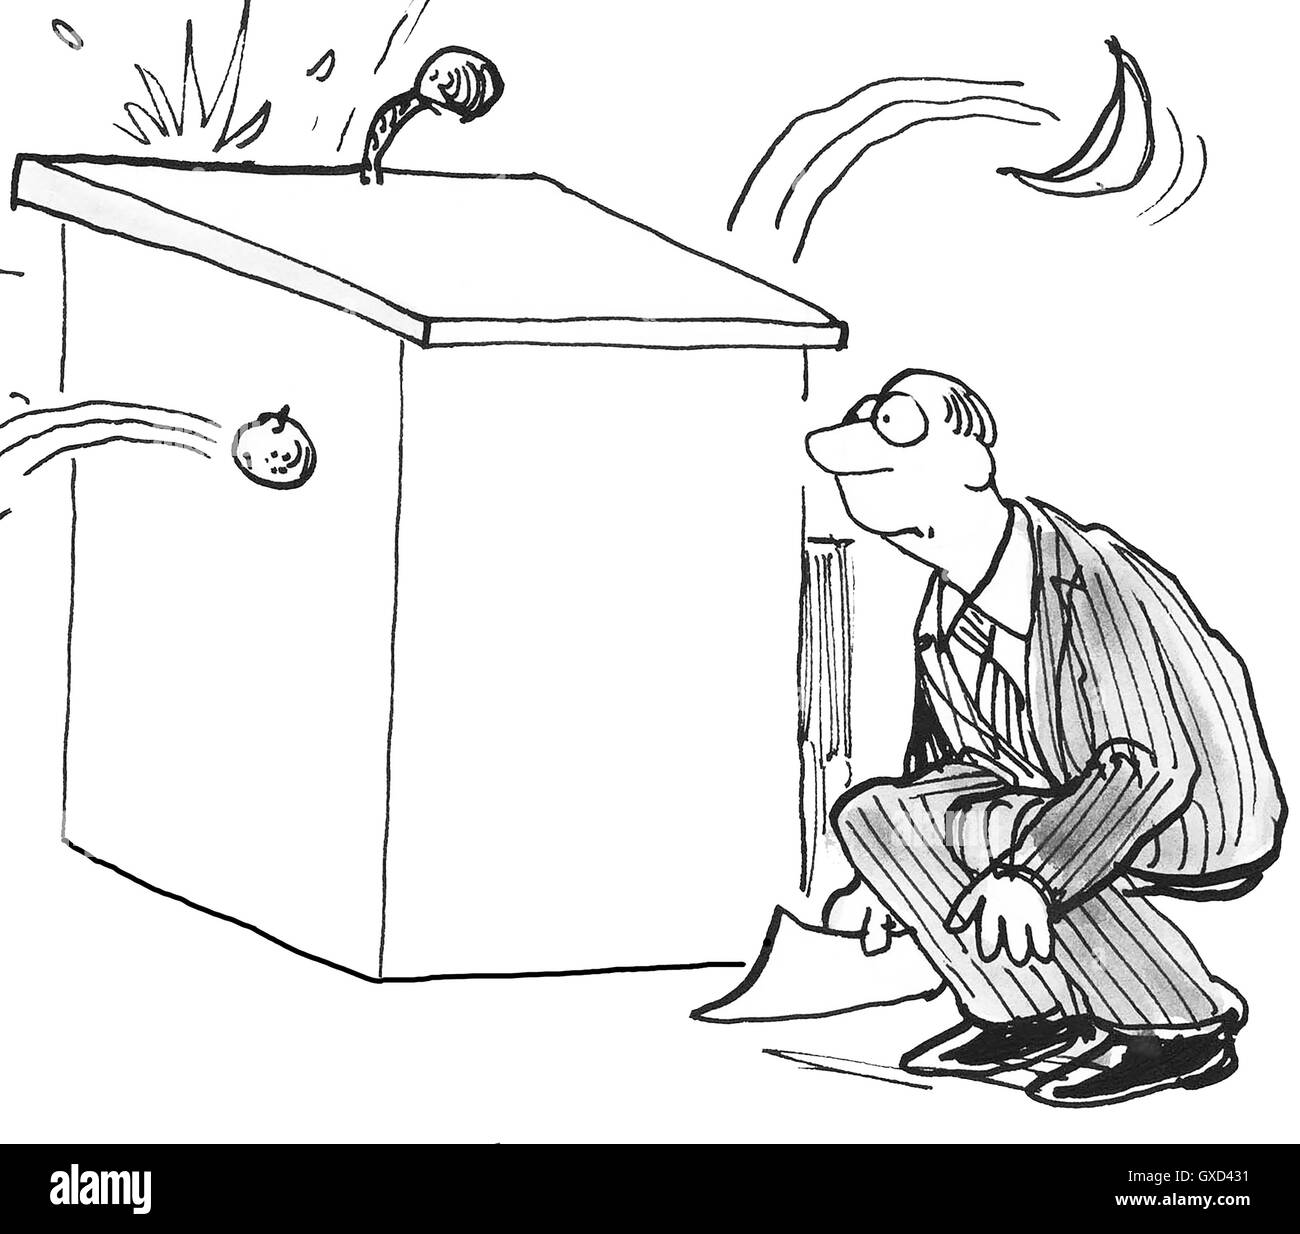 B&W Unternehmen oder politische Karikatur zeigt einen Mann hinter einem Podium hocken, wie das Publikum ihn an Faule Tomaten wirft. Stockfoto